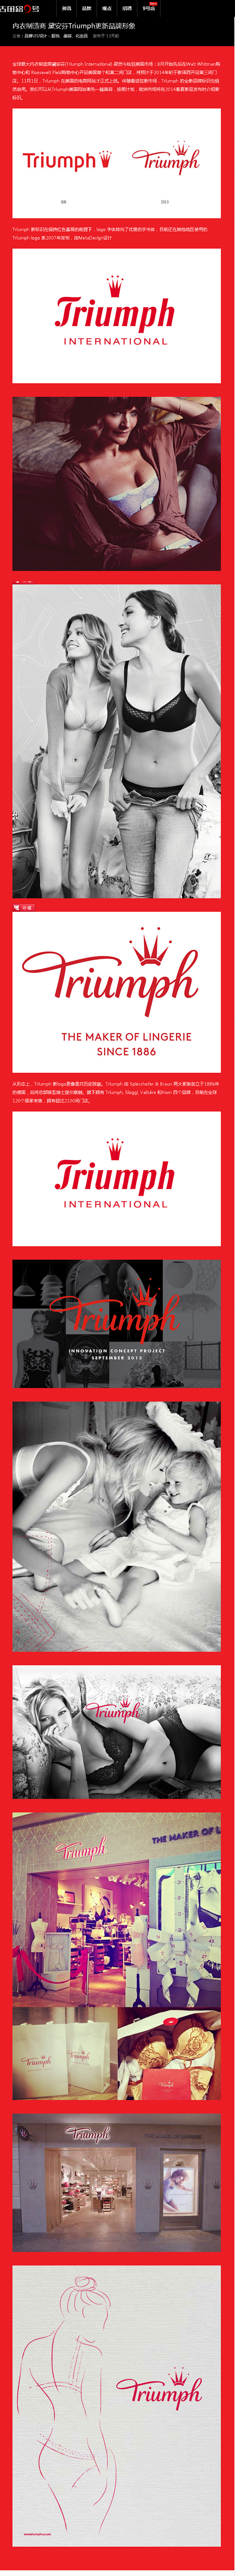 内衣制造商 黛安芬Triumph更新品牌...